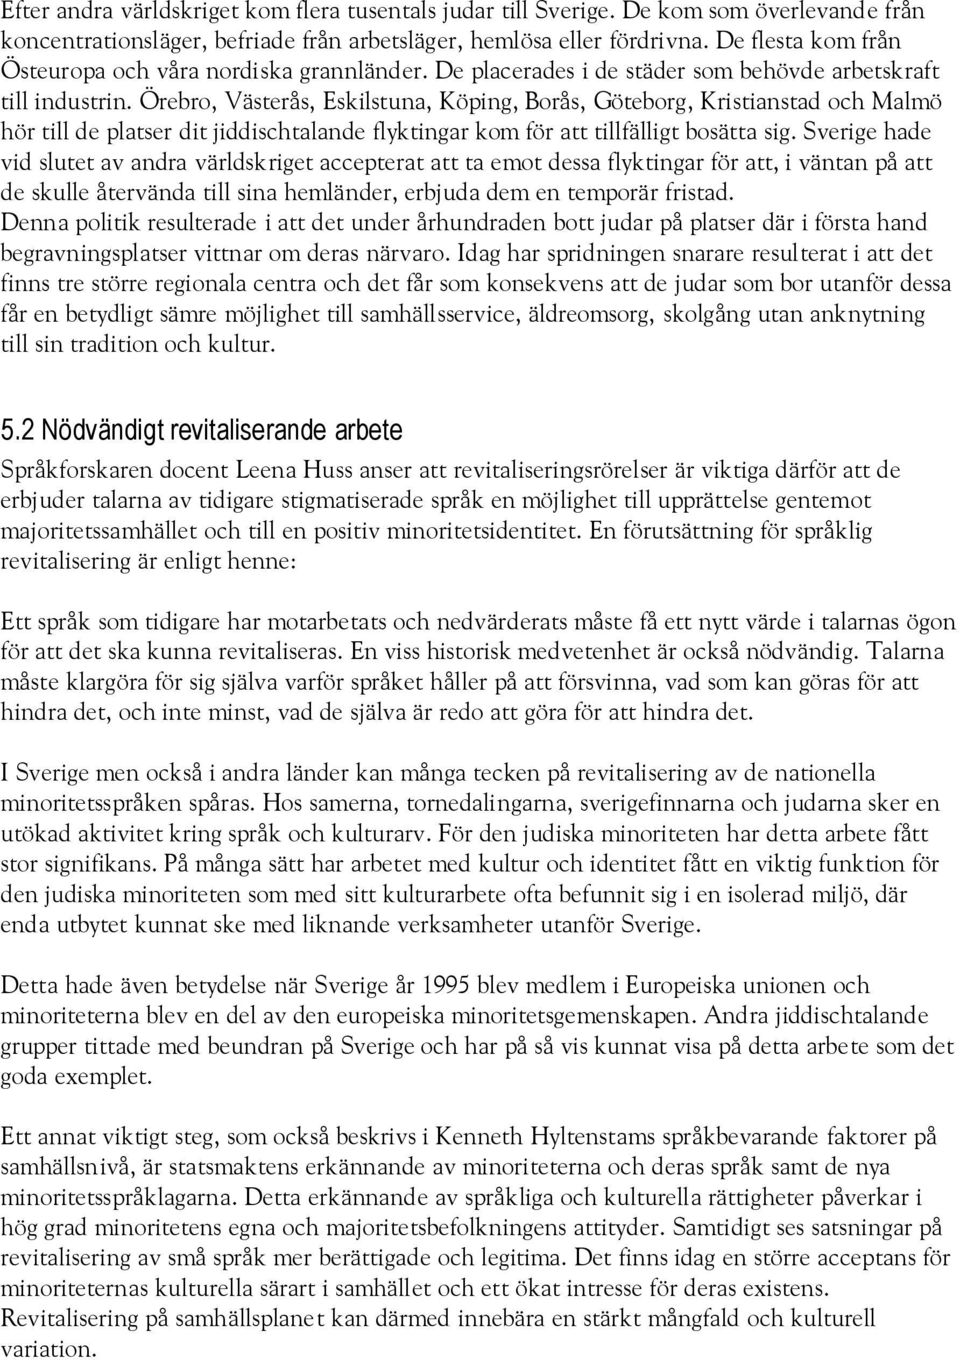 Örebro, Västerås, Eskilstuna, Köping, Borås, Göteborg, Kristianstad och Malmö hör till de platser dit jiddischtalande flyktingar kom för att tillfälligt bosätta sig.